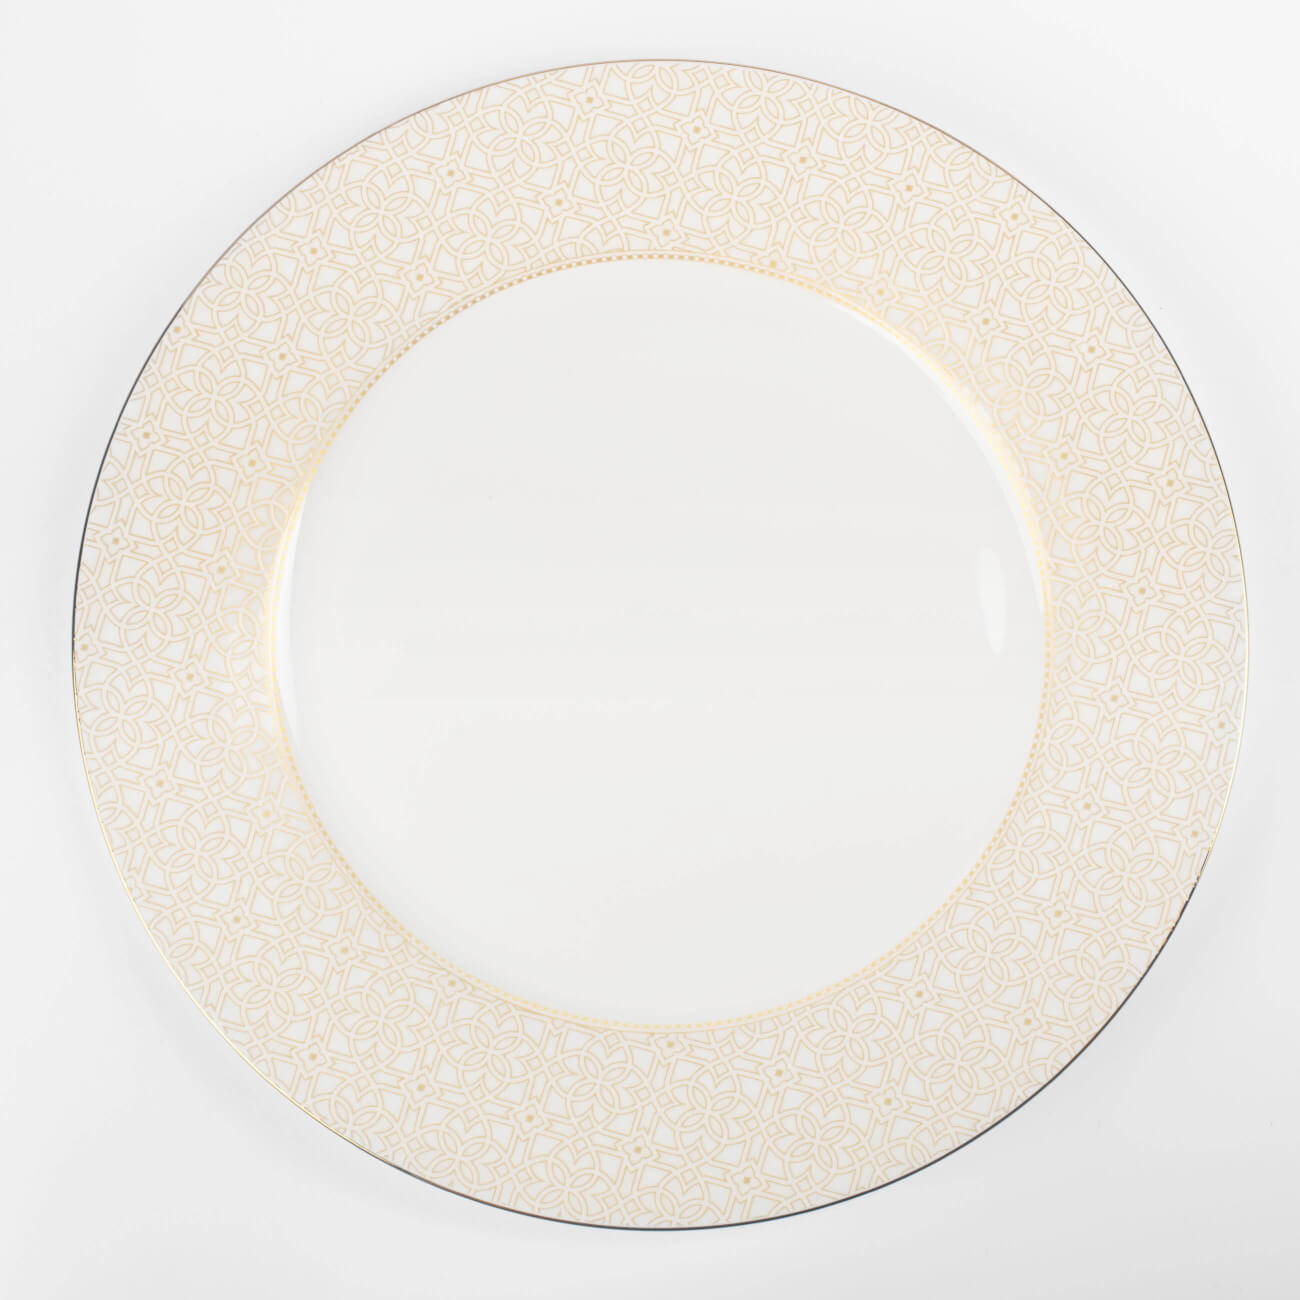 Тарелка обеденная, 27 см, фарфор F, с золотистым кантом, Орнамент, Liberty тарелка обеденная noritake трефолио платиновый кант 28 см